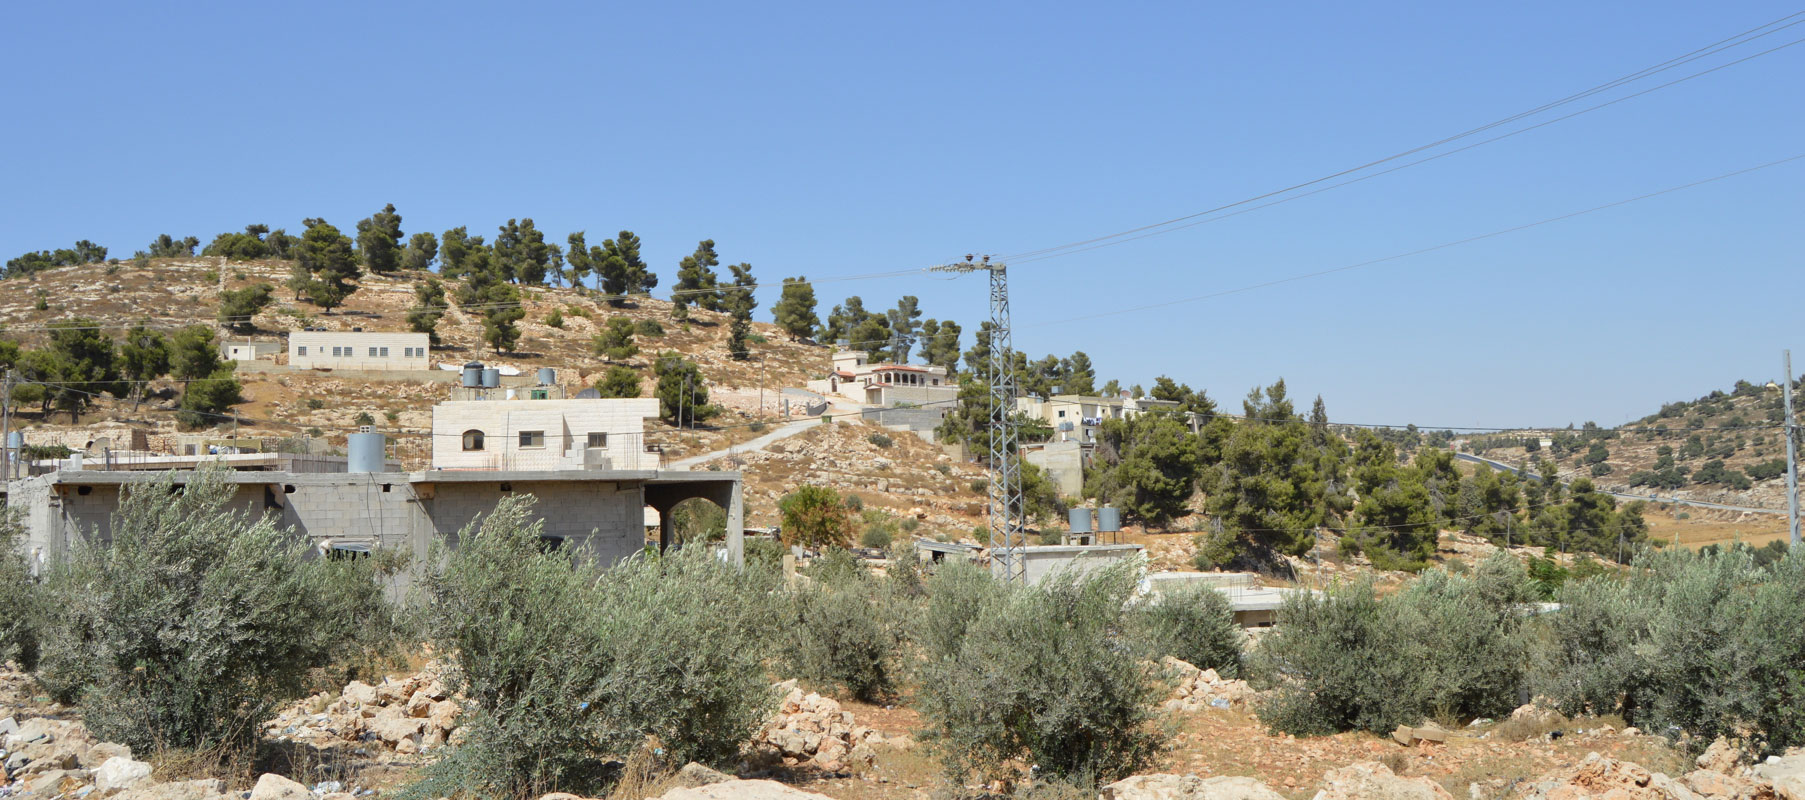 Wadi al shajni, Palestine